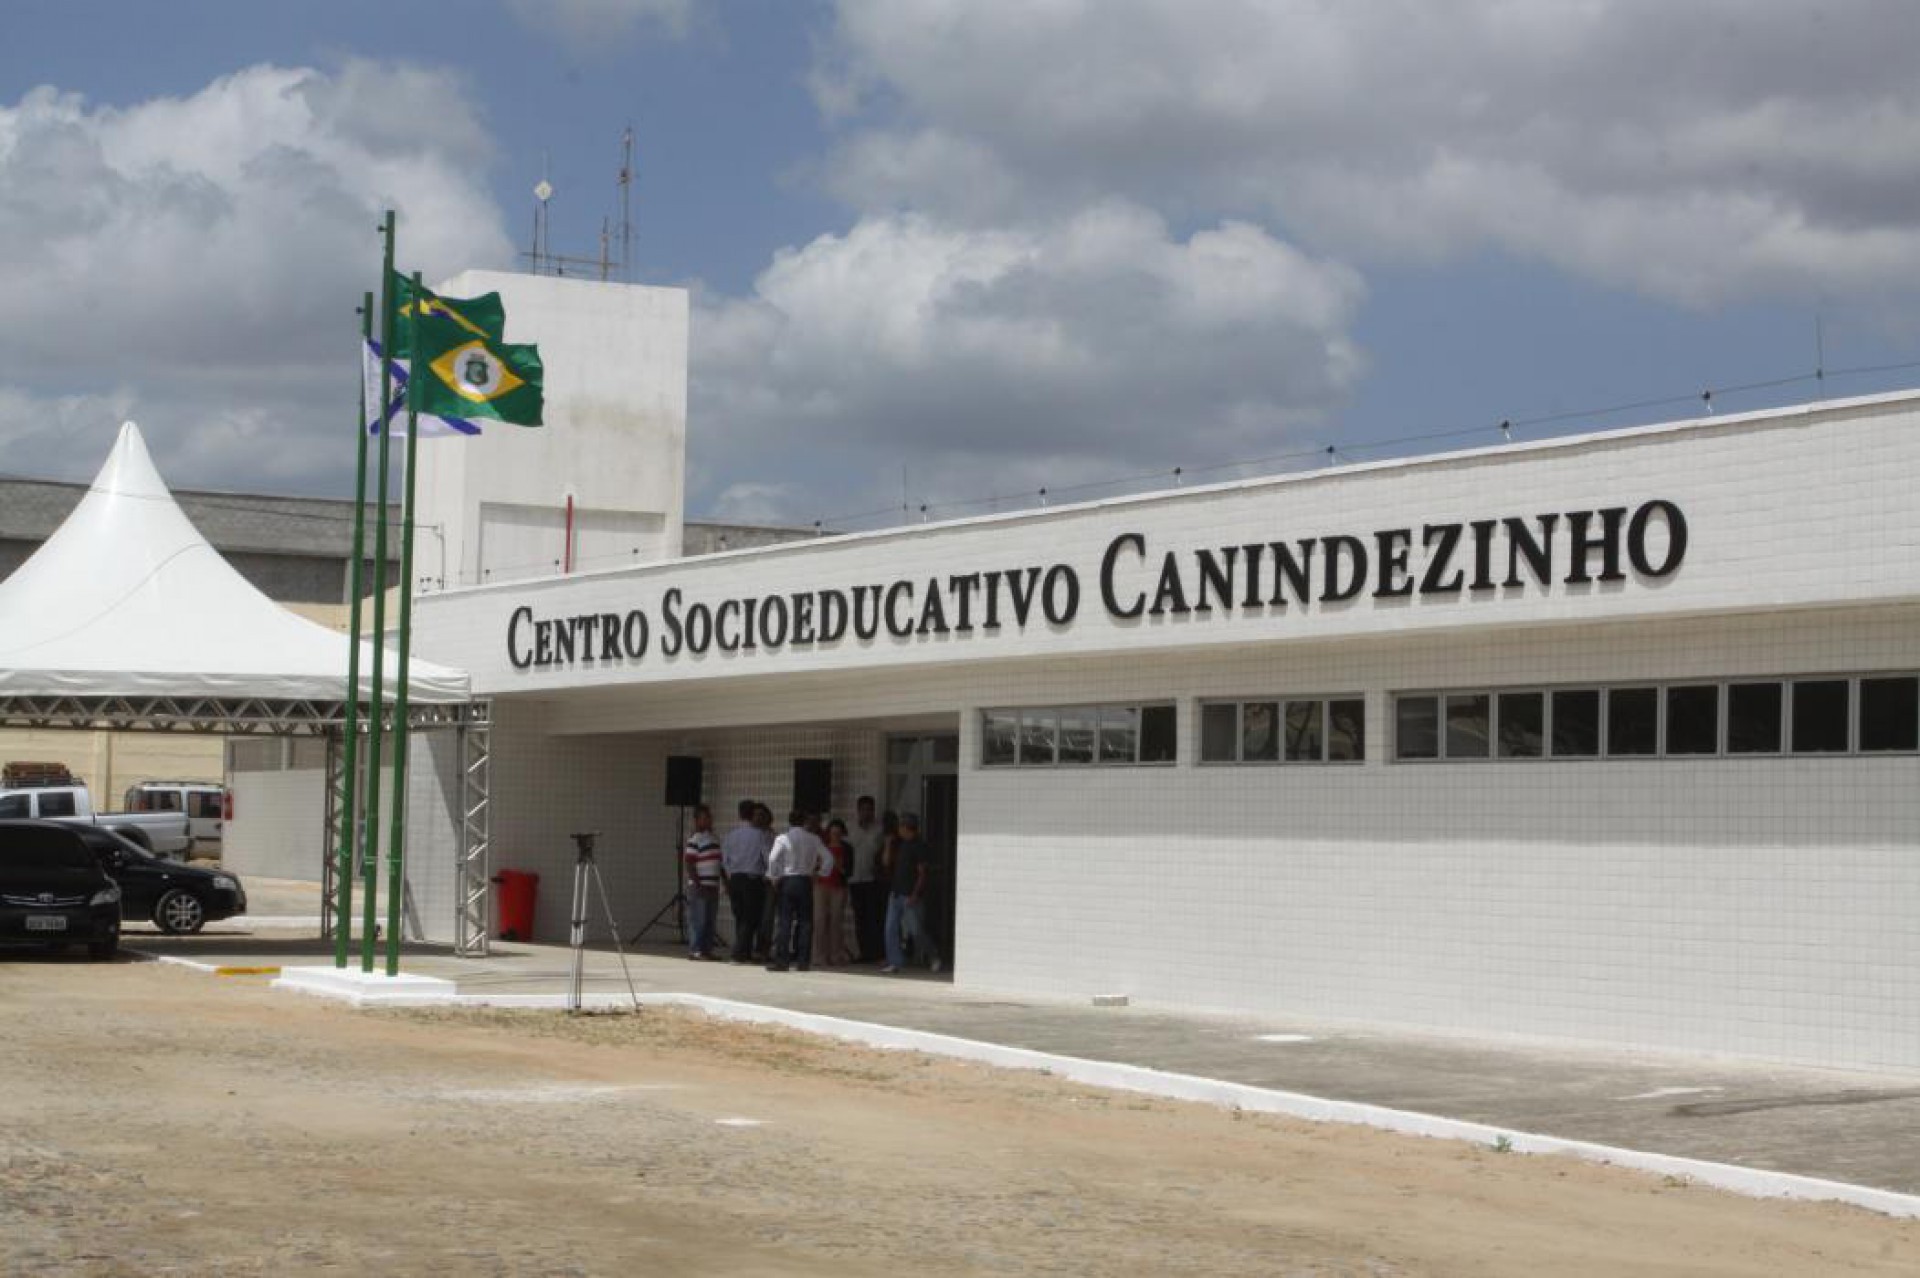 ASSASSINATO de menino de 14 anos ocorreu no interior do Centro Socioeducativo Canindezinho, no último dia 24 de abril (Foto: MAURI MELO)